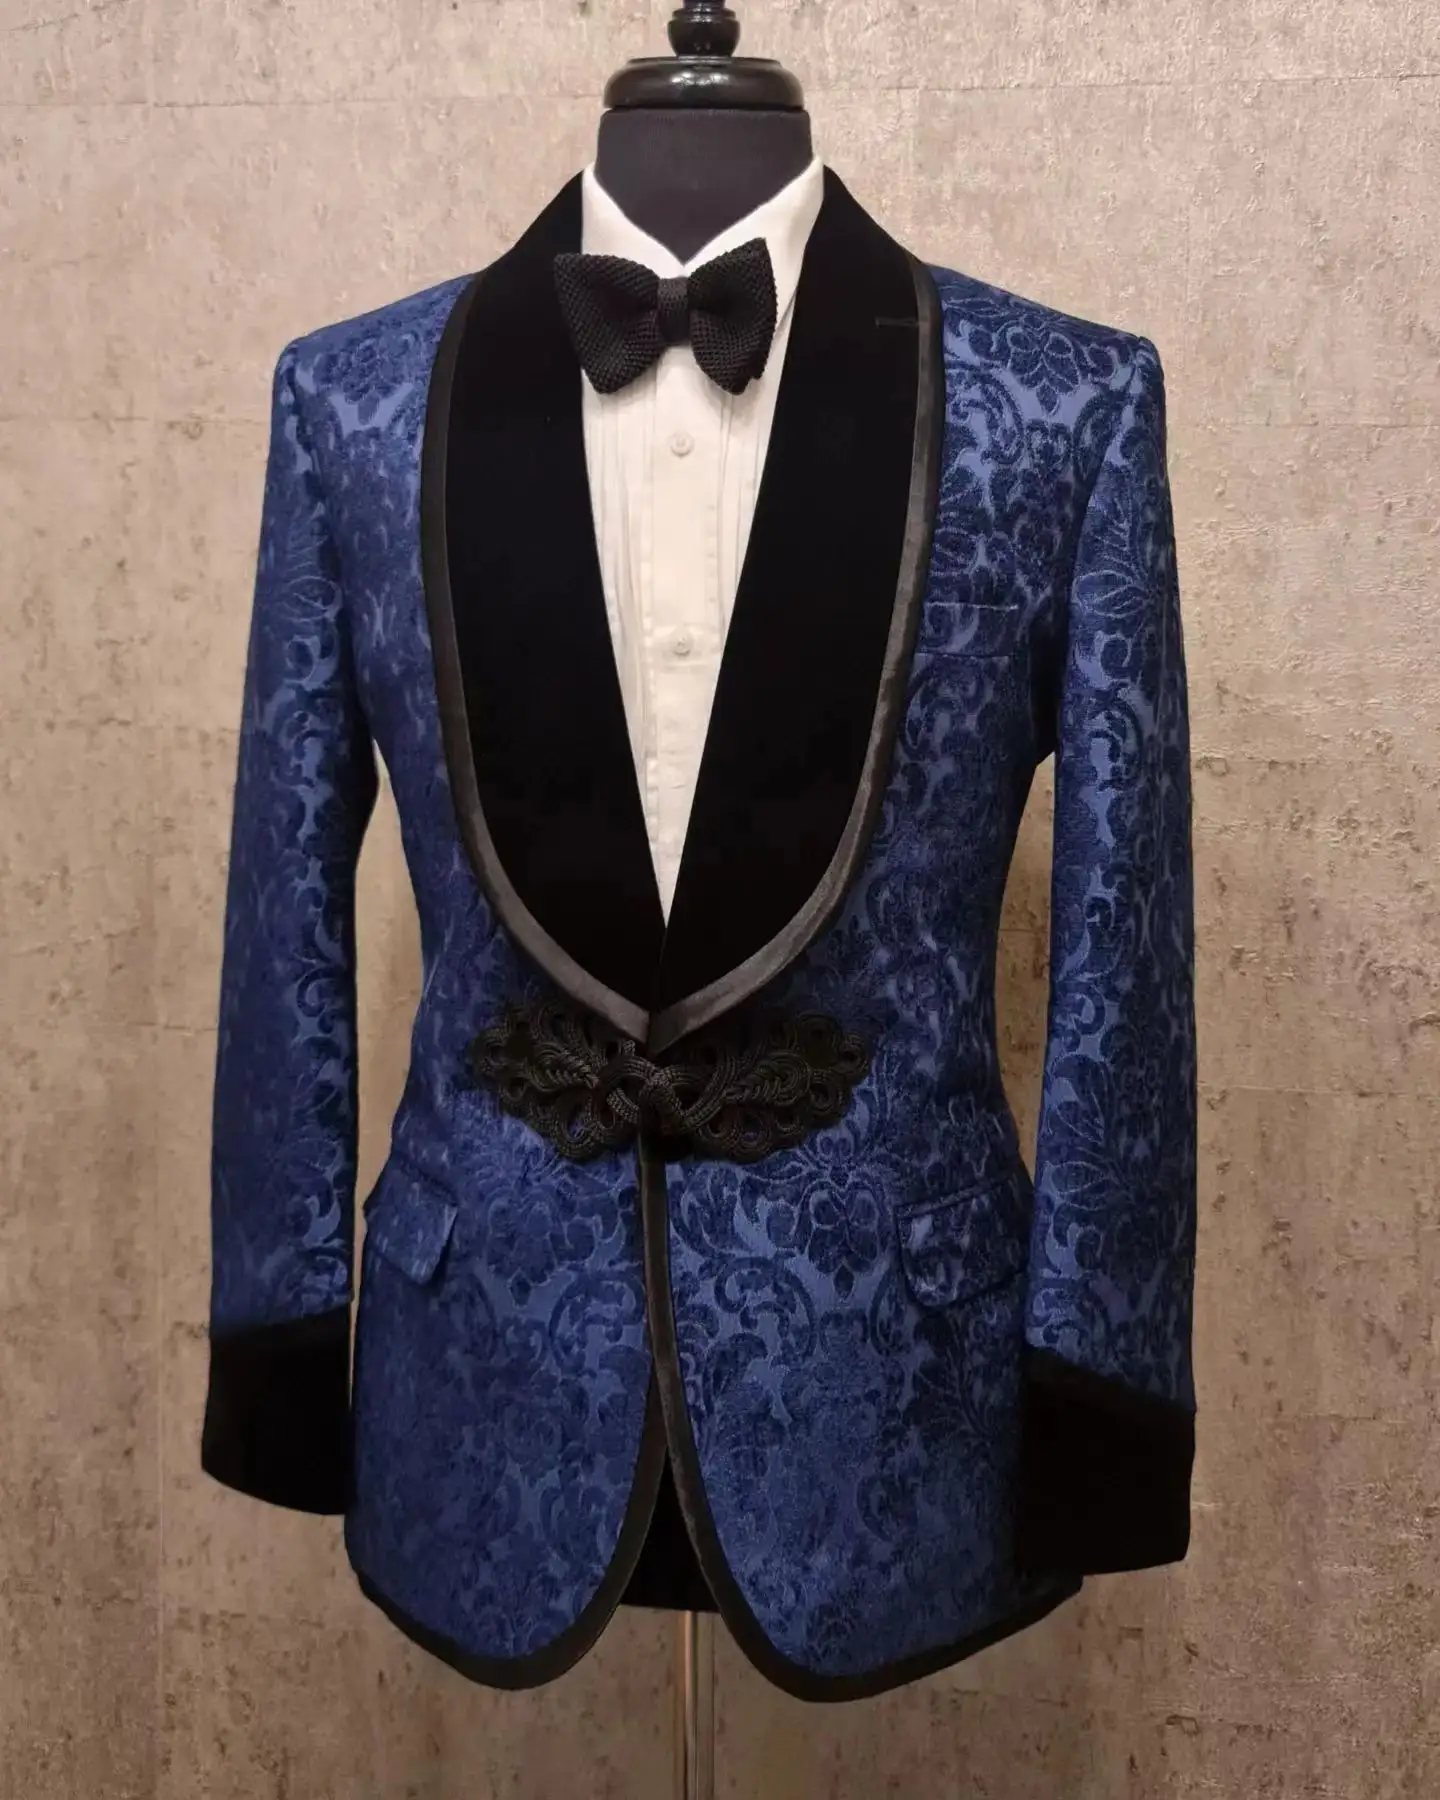 Terzi bordo erkekler kadife takım elbise Blazer damat smokin düğün yemeği balo Suit